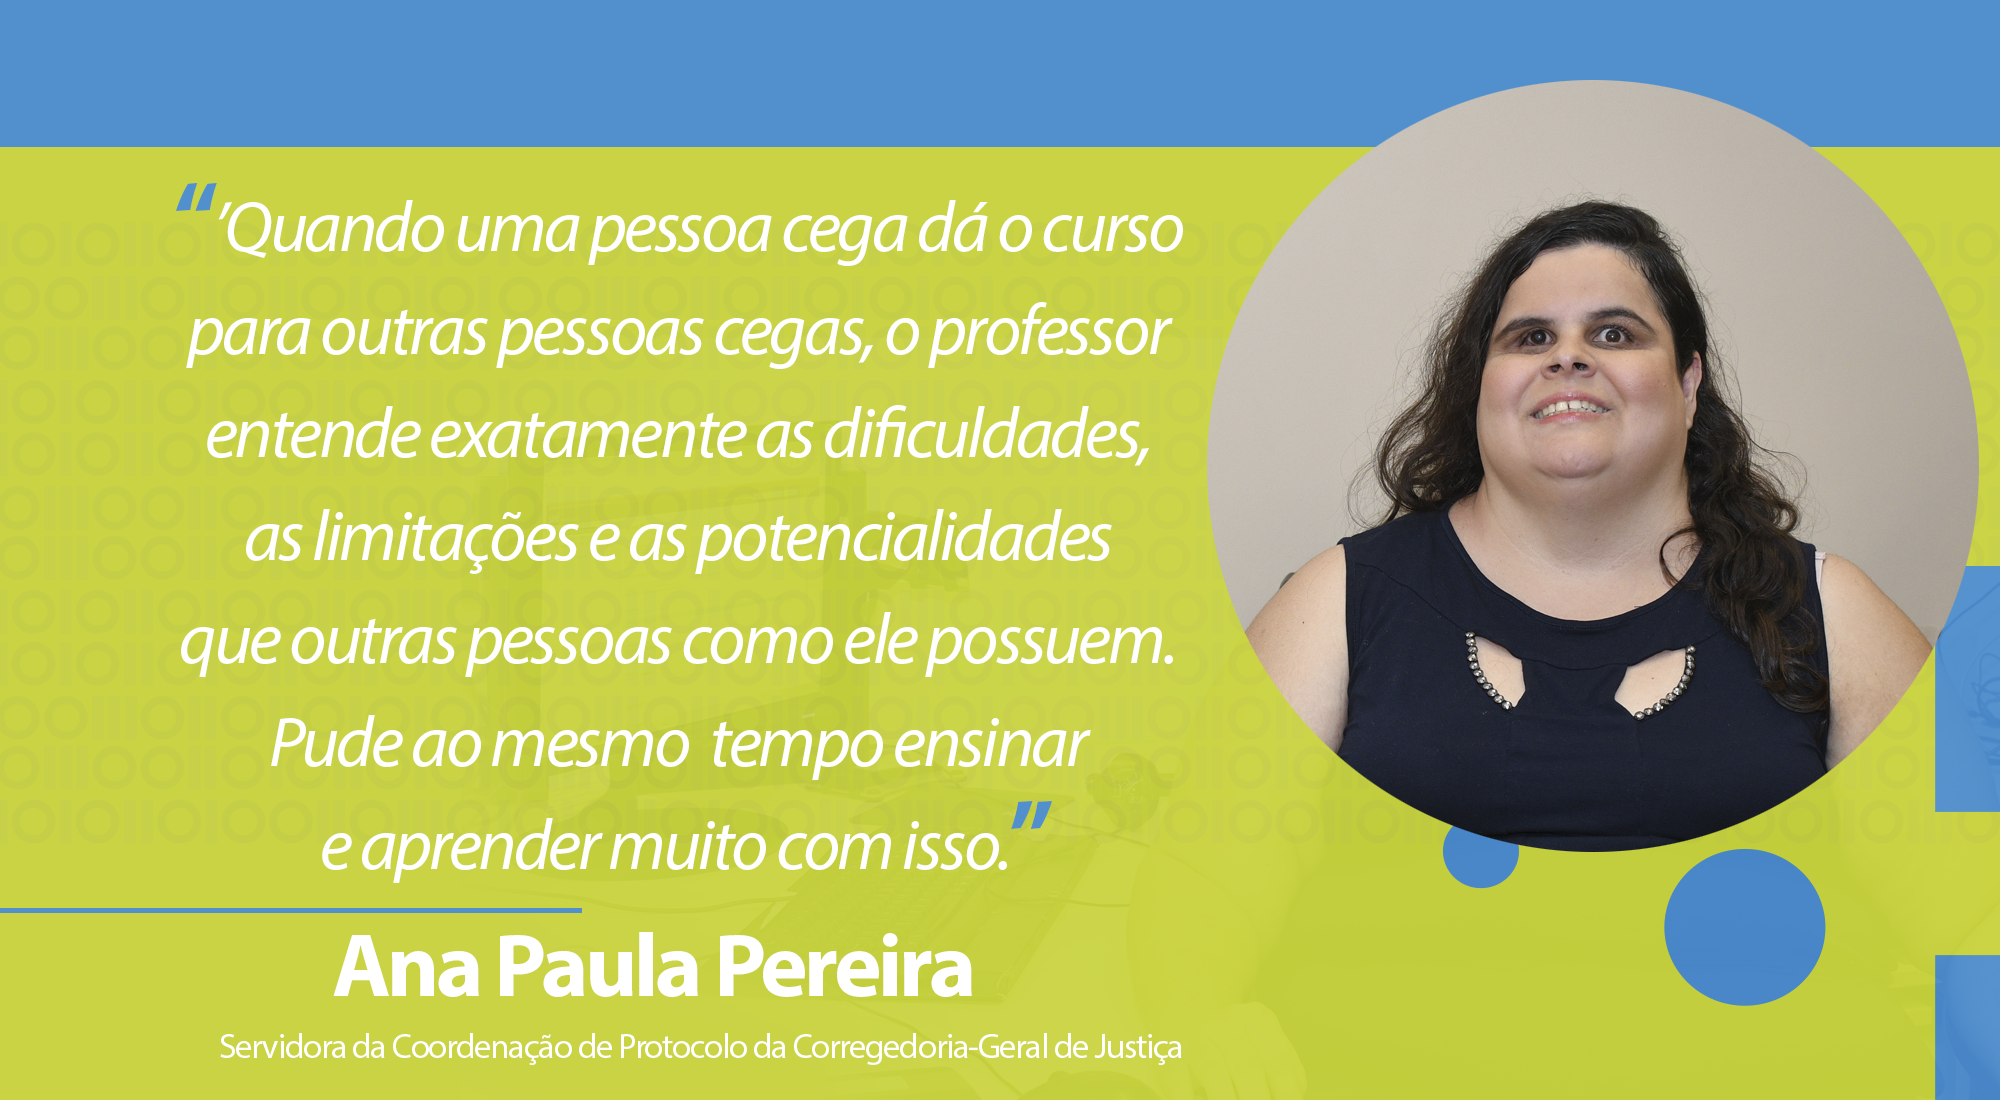 Ana Paula, Servidora da Coordenação de Protocolo da Corregedoria-Geral de Justiça.